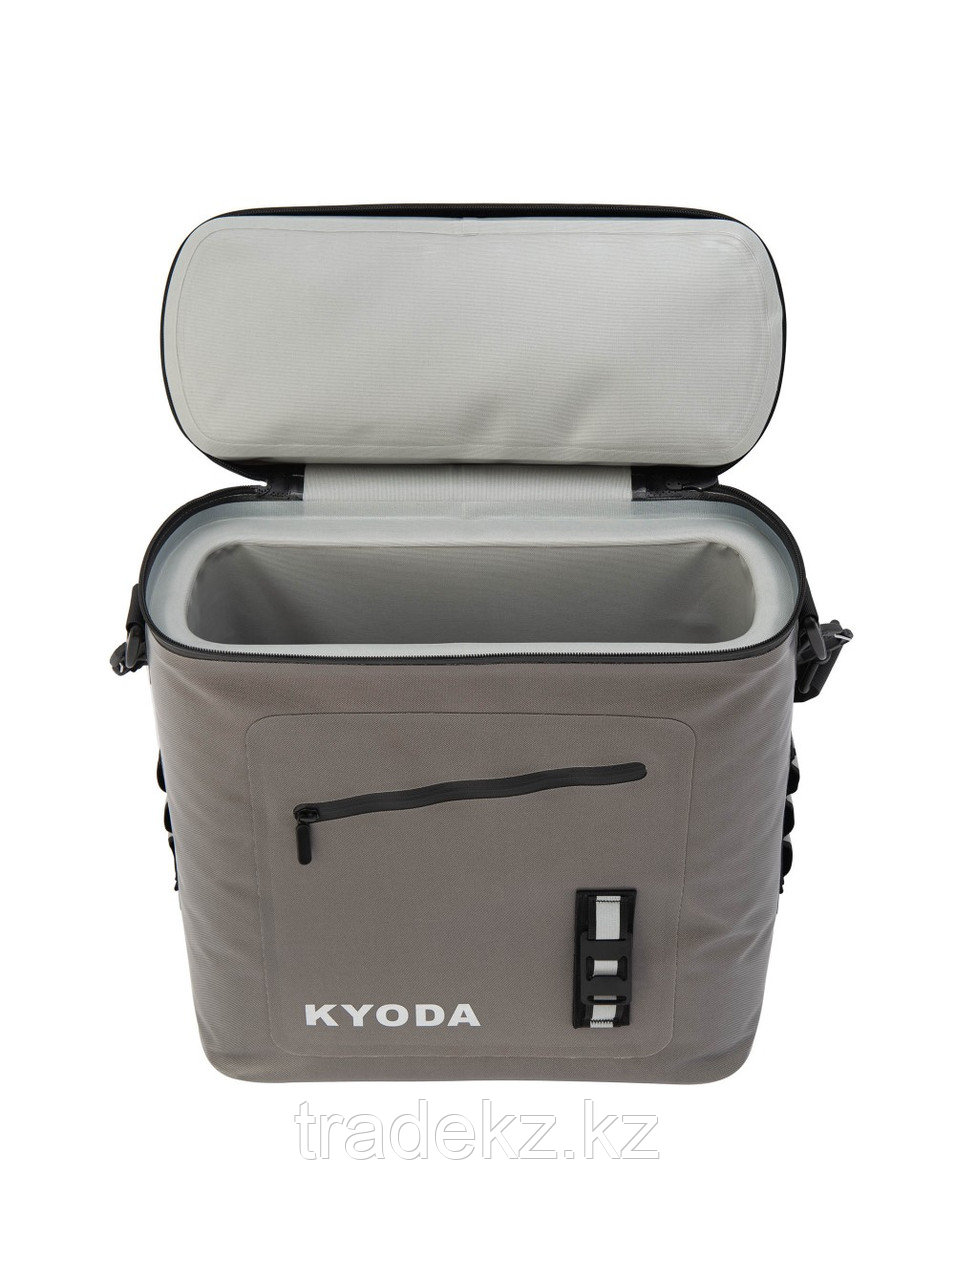 Изотермическая сумка KYODA SC14-BB на багажник велосипеда жесткий каркас 14 л, цвет серый